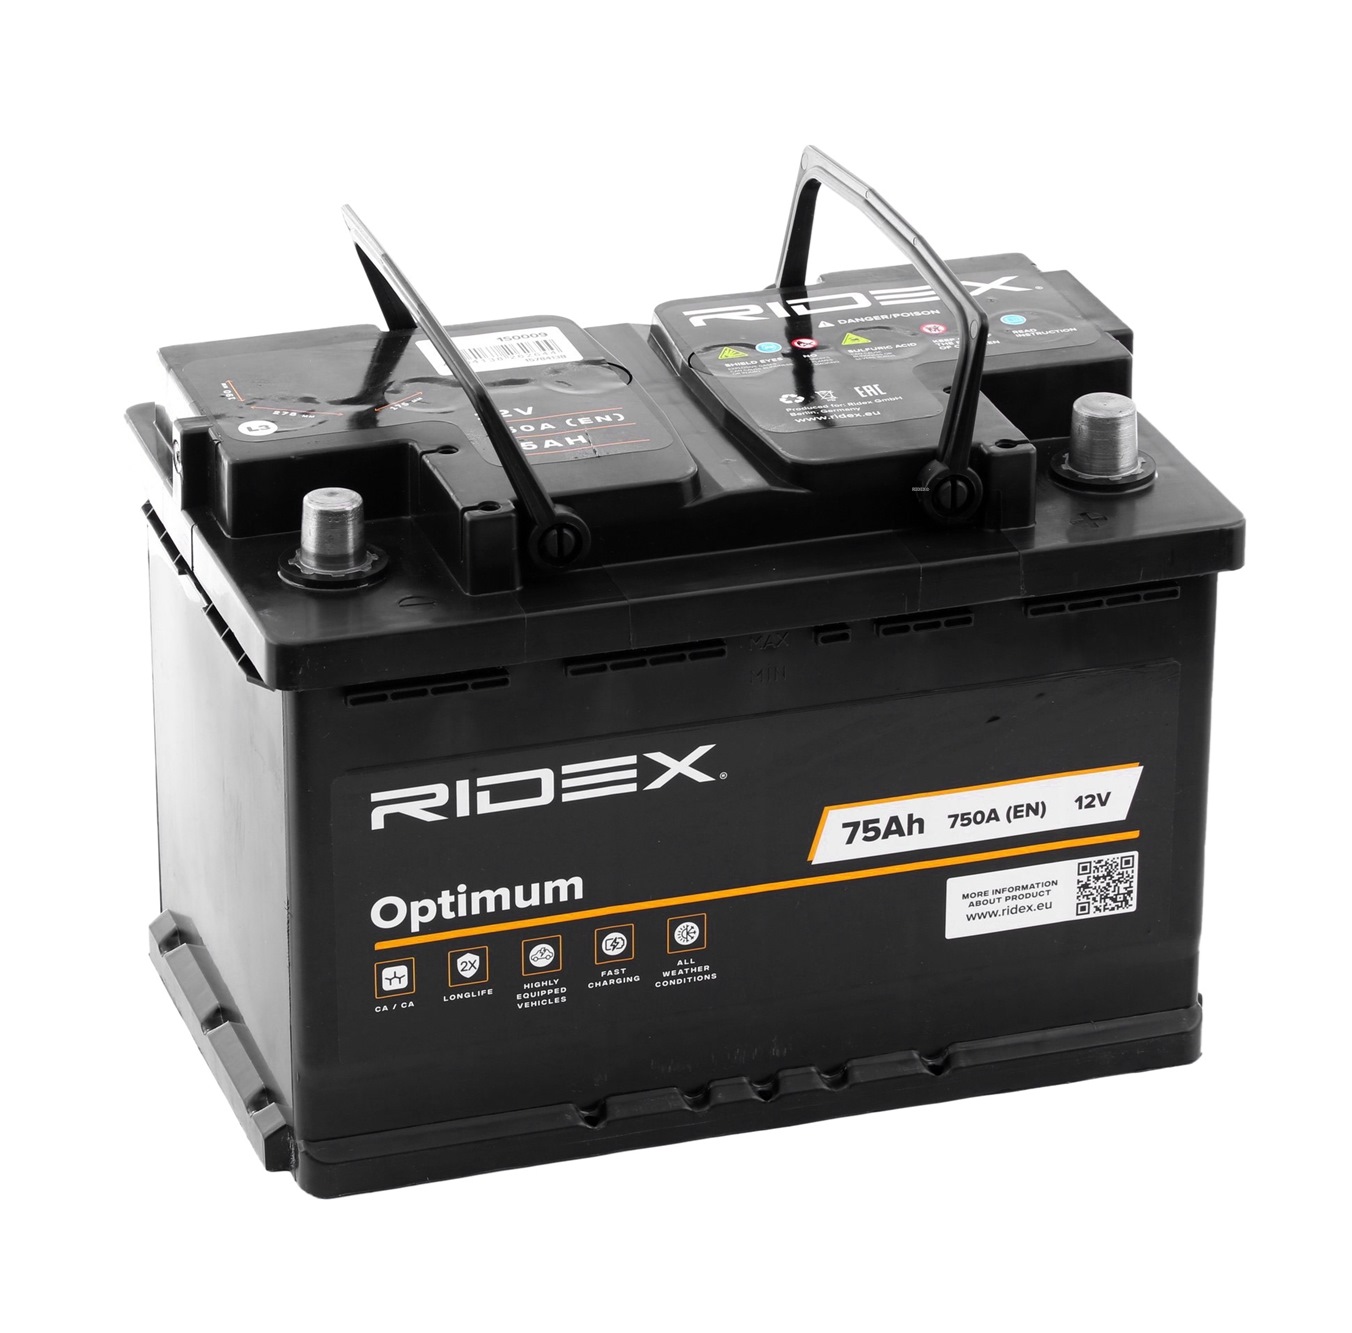 RIDEX: Original Autobatterie 1S0009 (Kälteprüfstrom EN: 750A, Spannung: 12V)